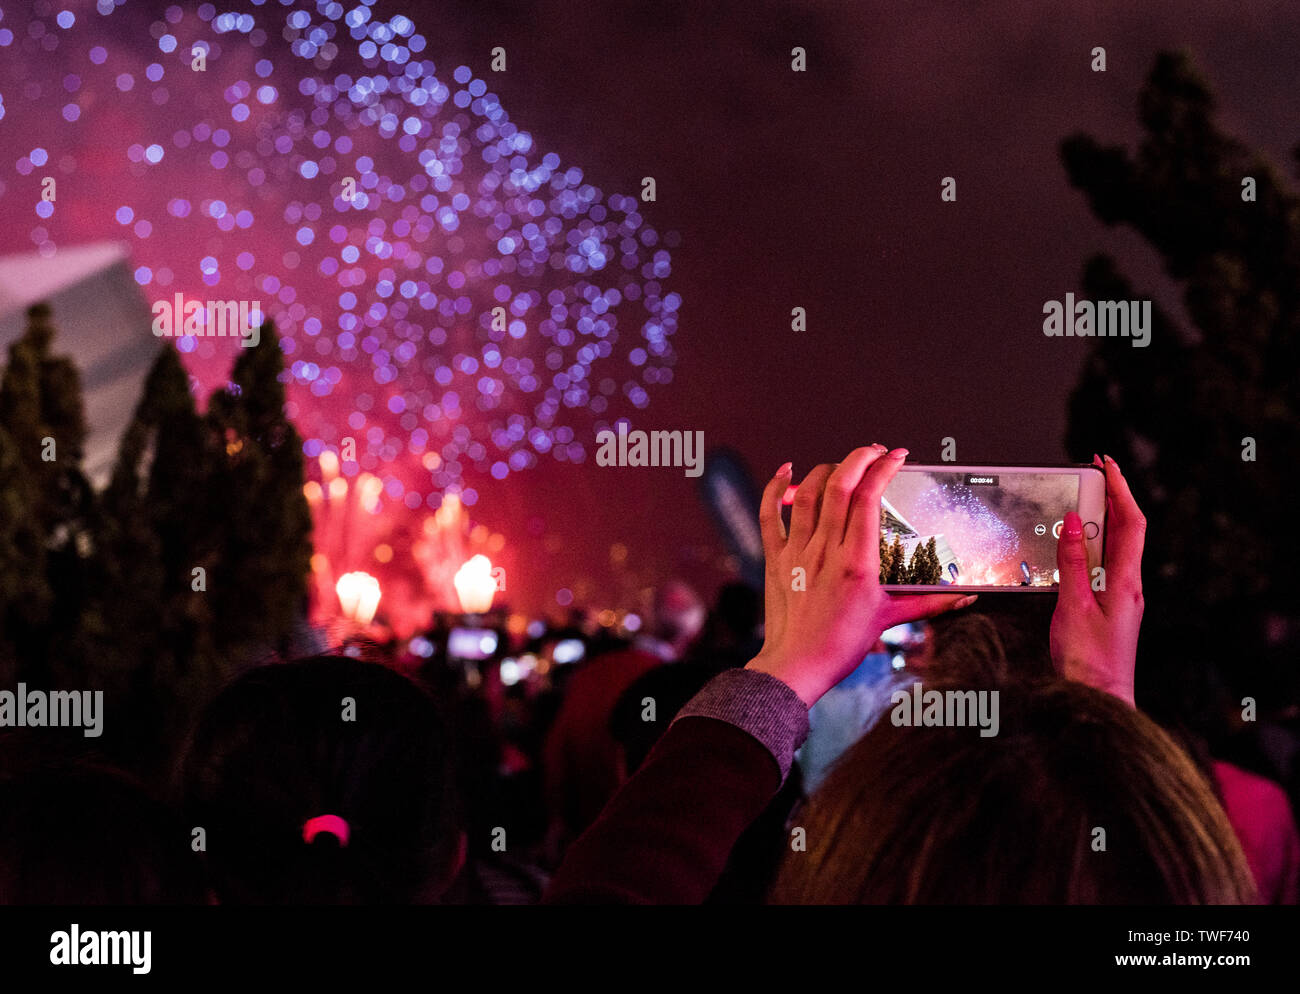 Photographier à l'aide d'artifice femme smartphone pendant les célébrations du Nouvel An chinois à Kowloon à Hong Kong. Banque D'Images